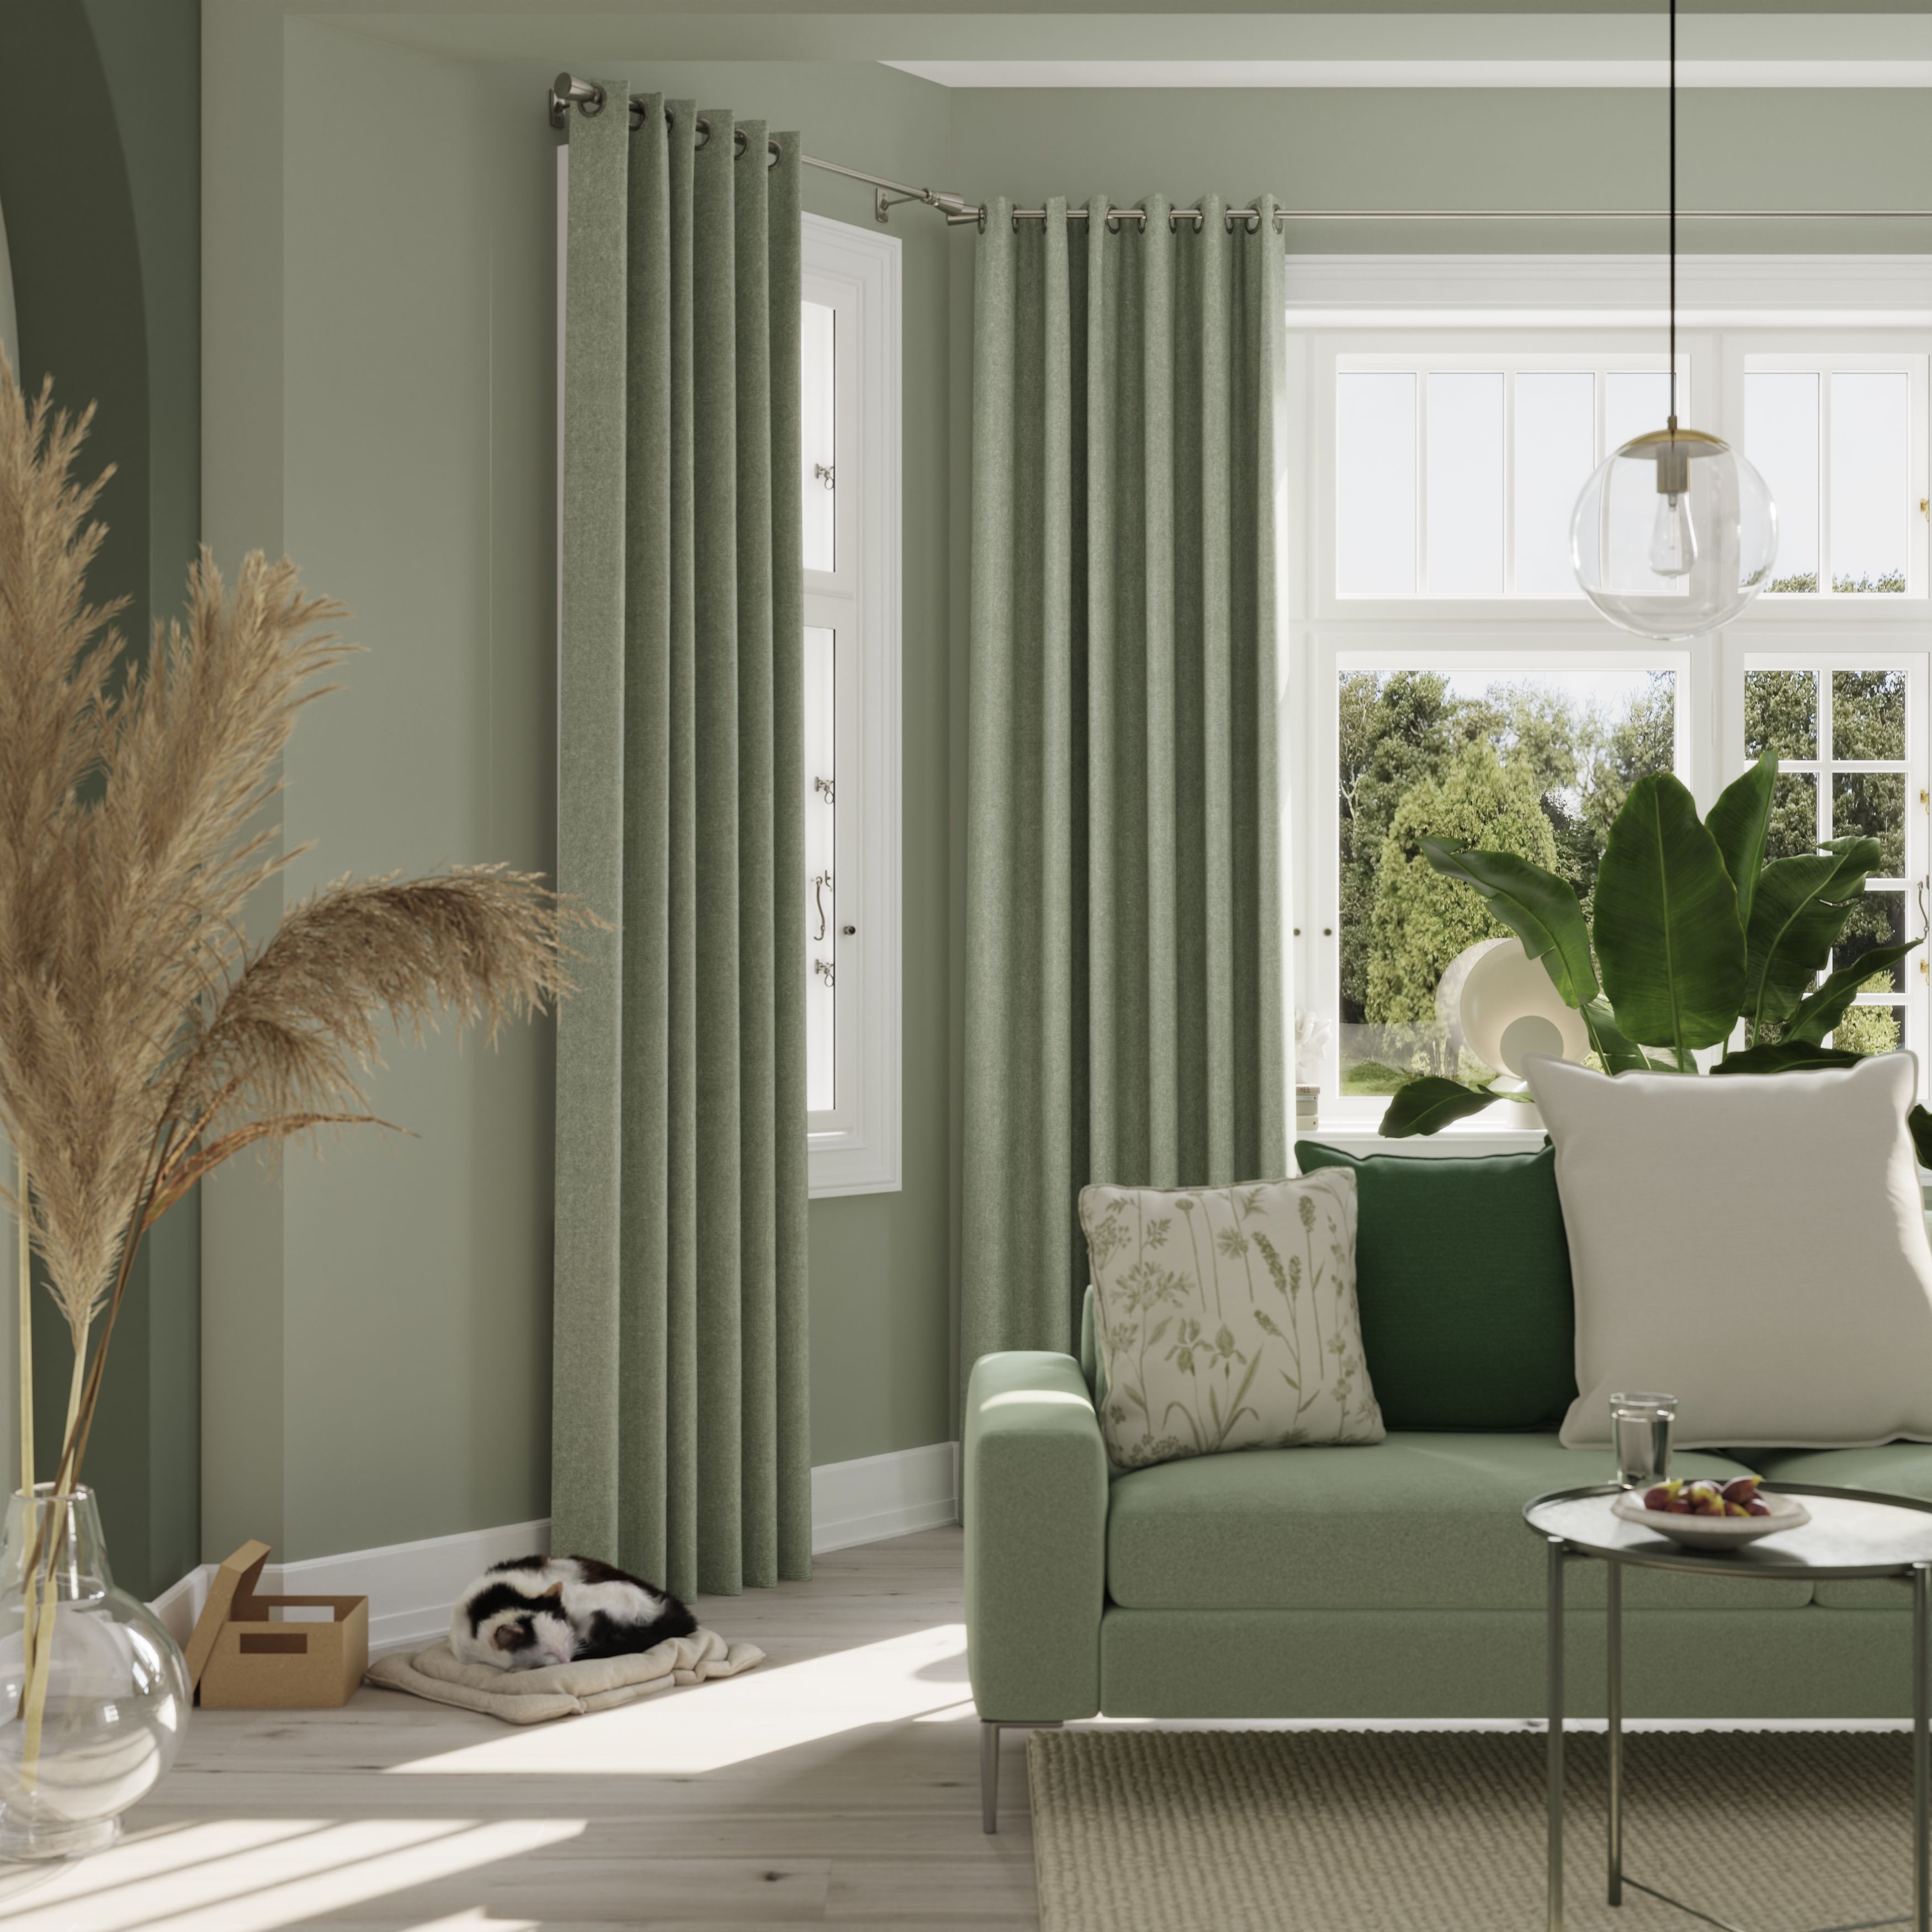 Napour Light green Plain Lined Eyelet Curtain (W)167cm (L)183cm, Pair